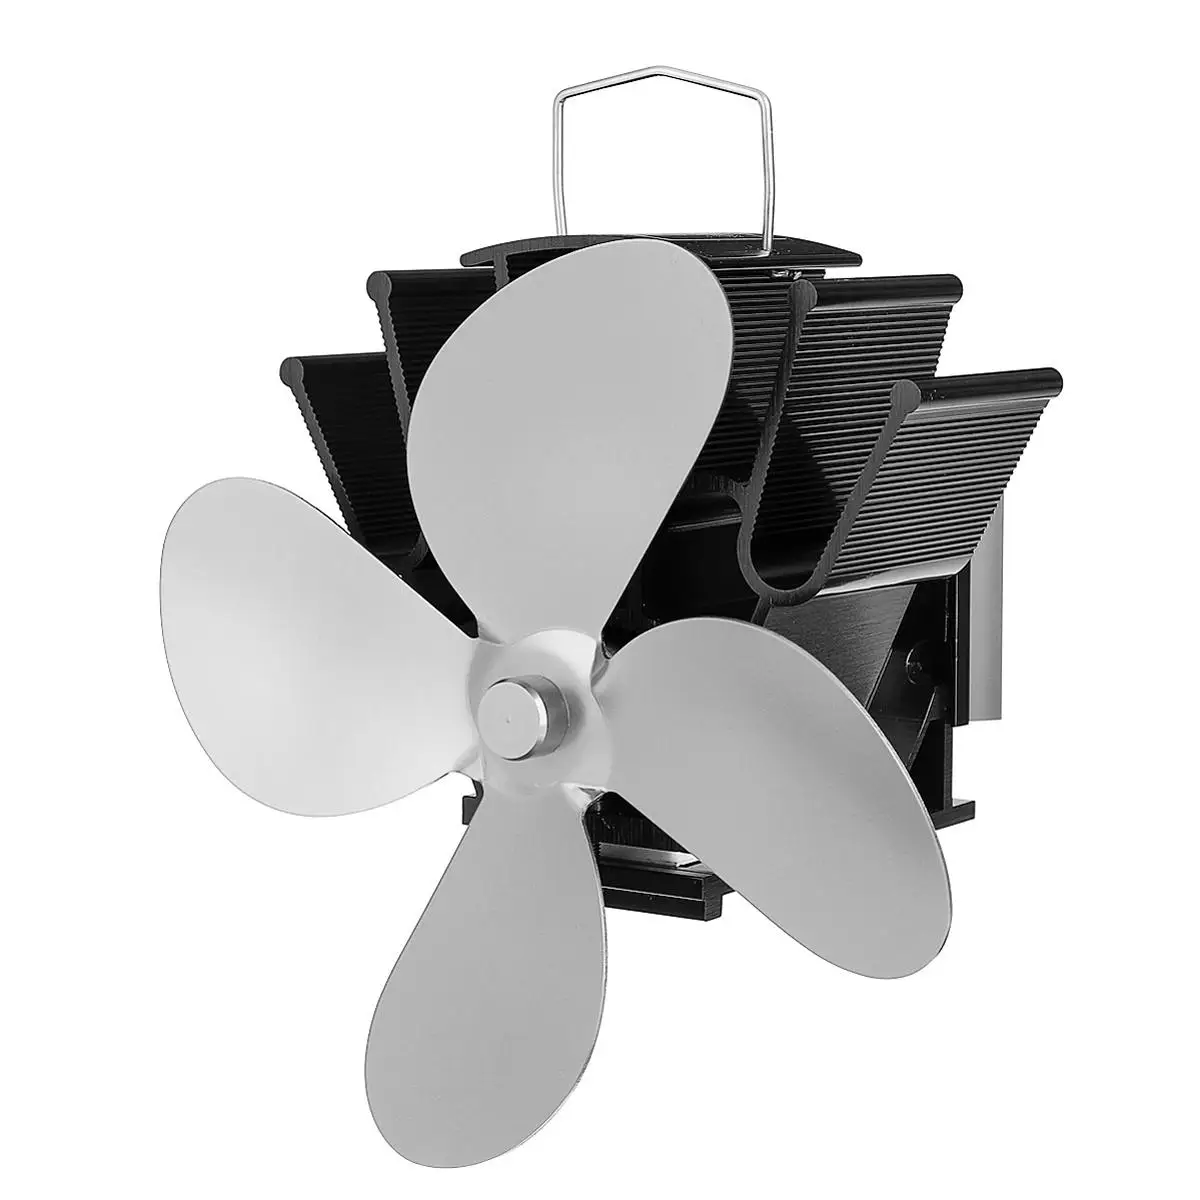 4 лопастной вентилятор для печи, работающий от тепловой энергии бревна деревянная горелка Ecofan тихий черный Домашний Вентилятор для камина эффективное распределение тепла - Цвет: silver